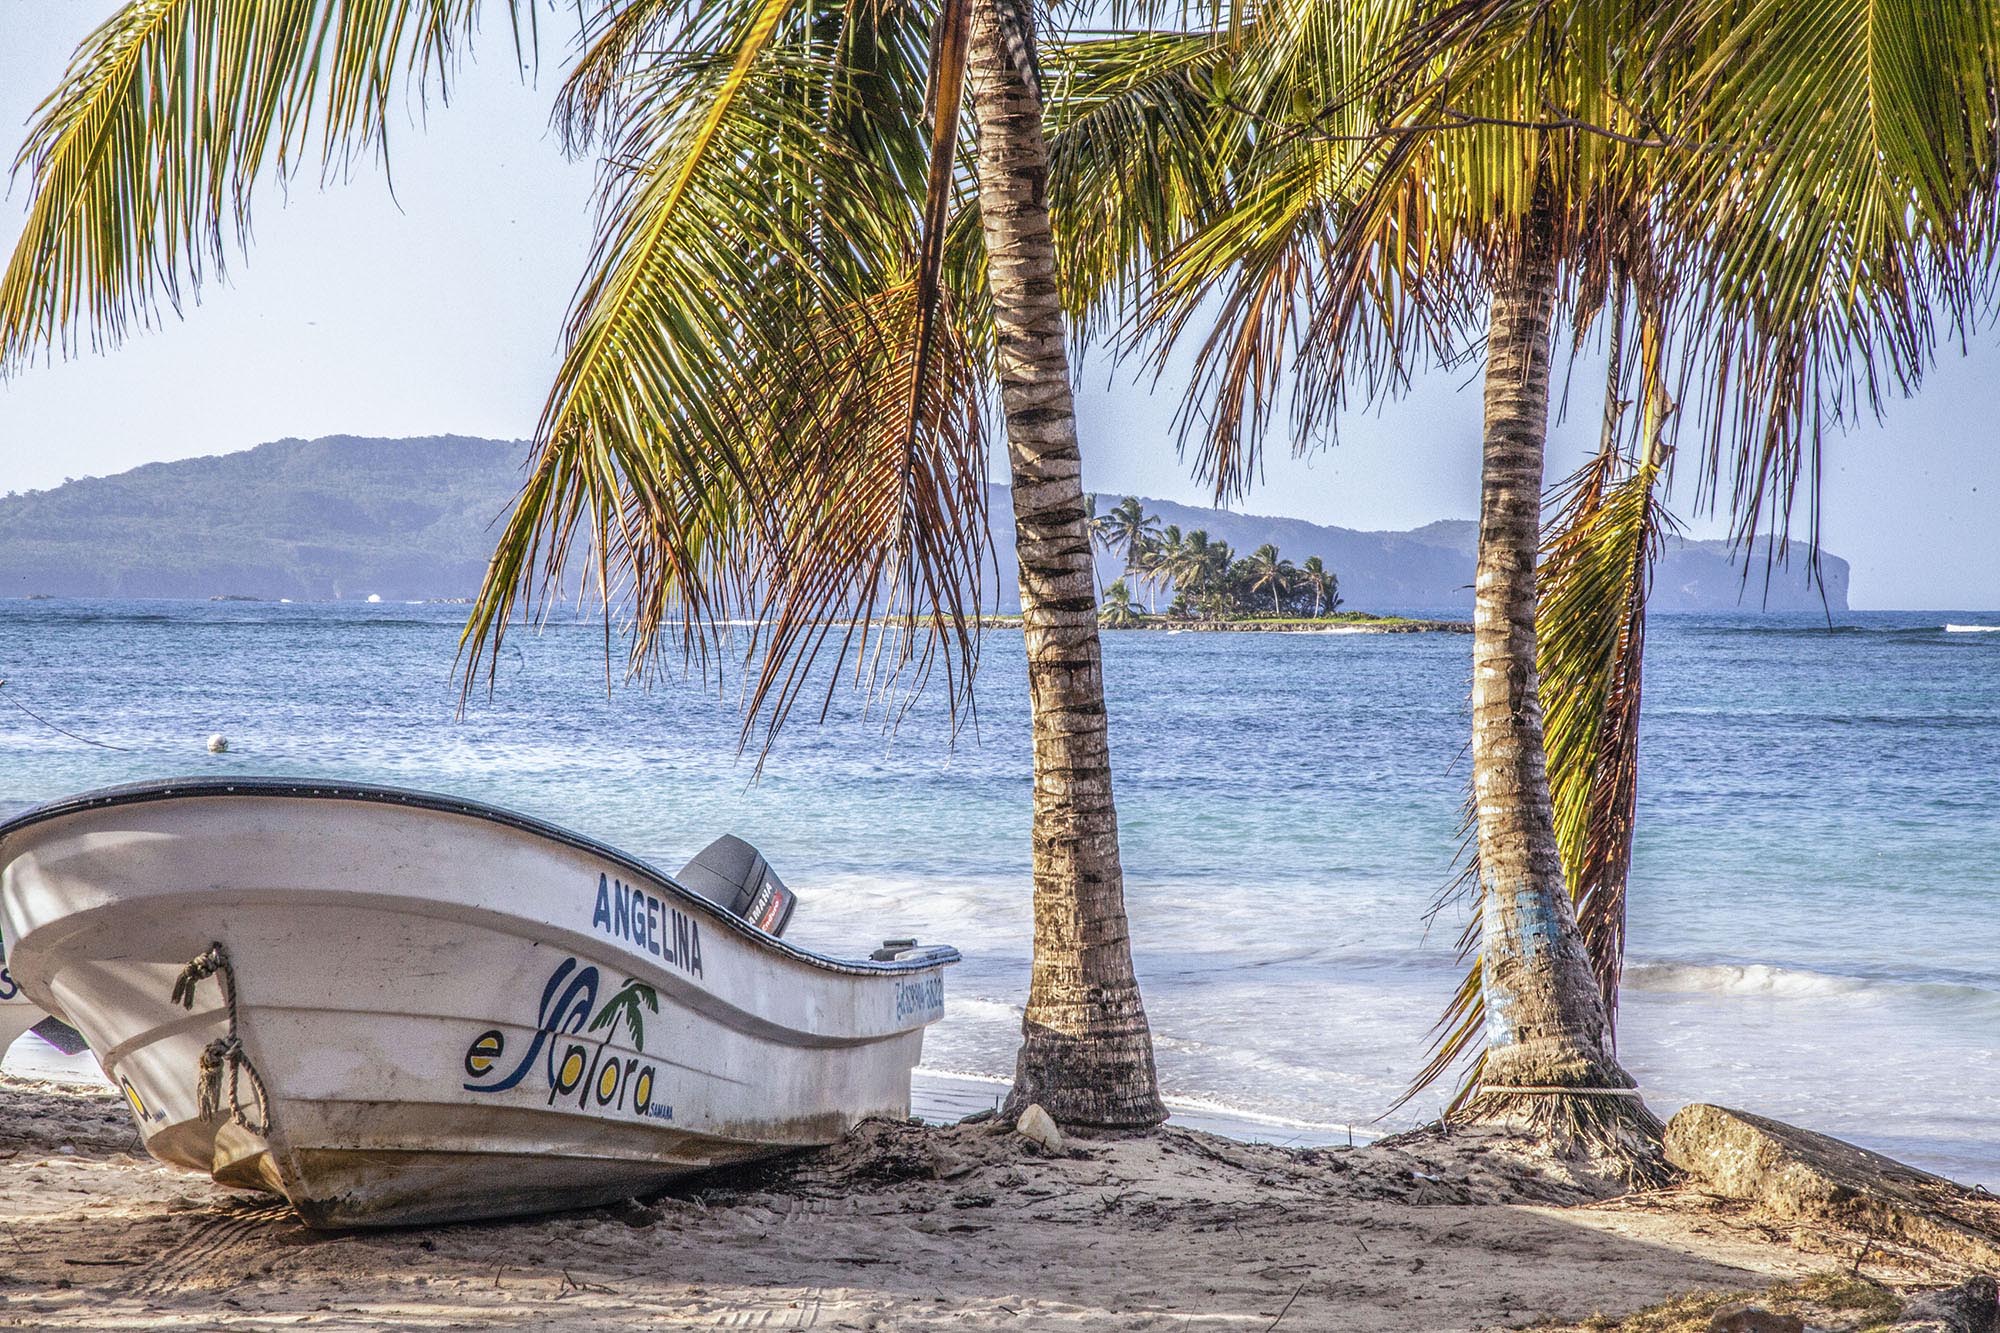 Boat on beach of Las Galeras, Dominican Republic